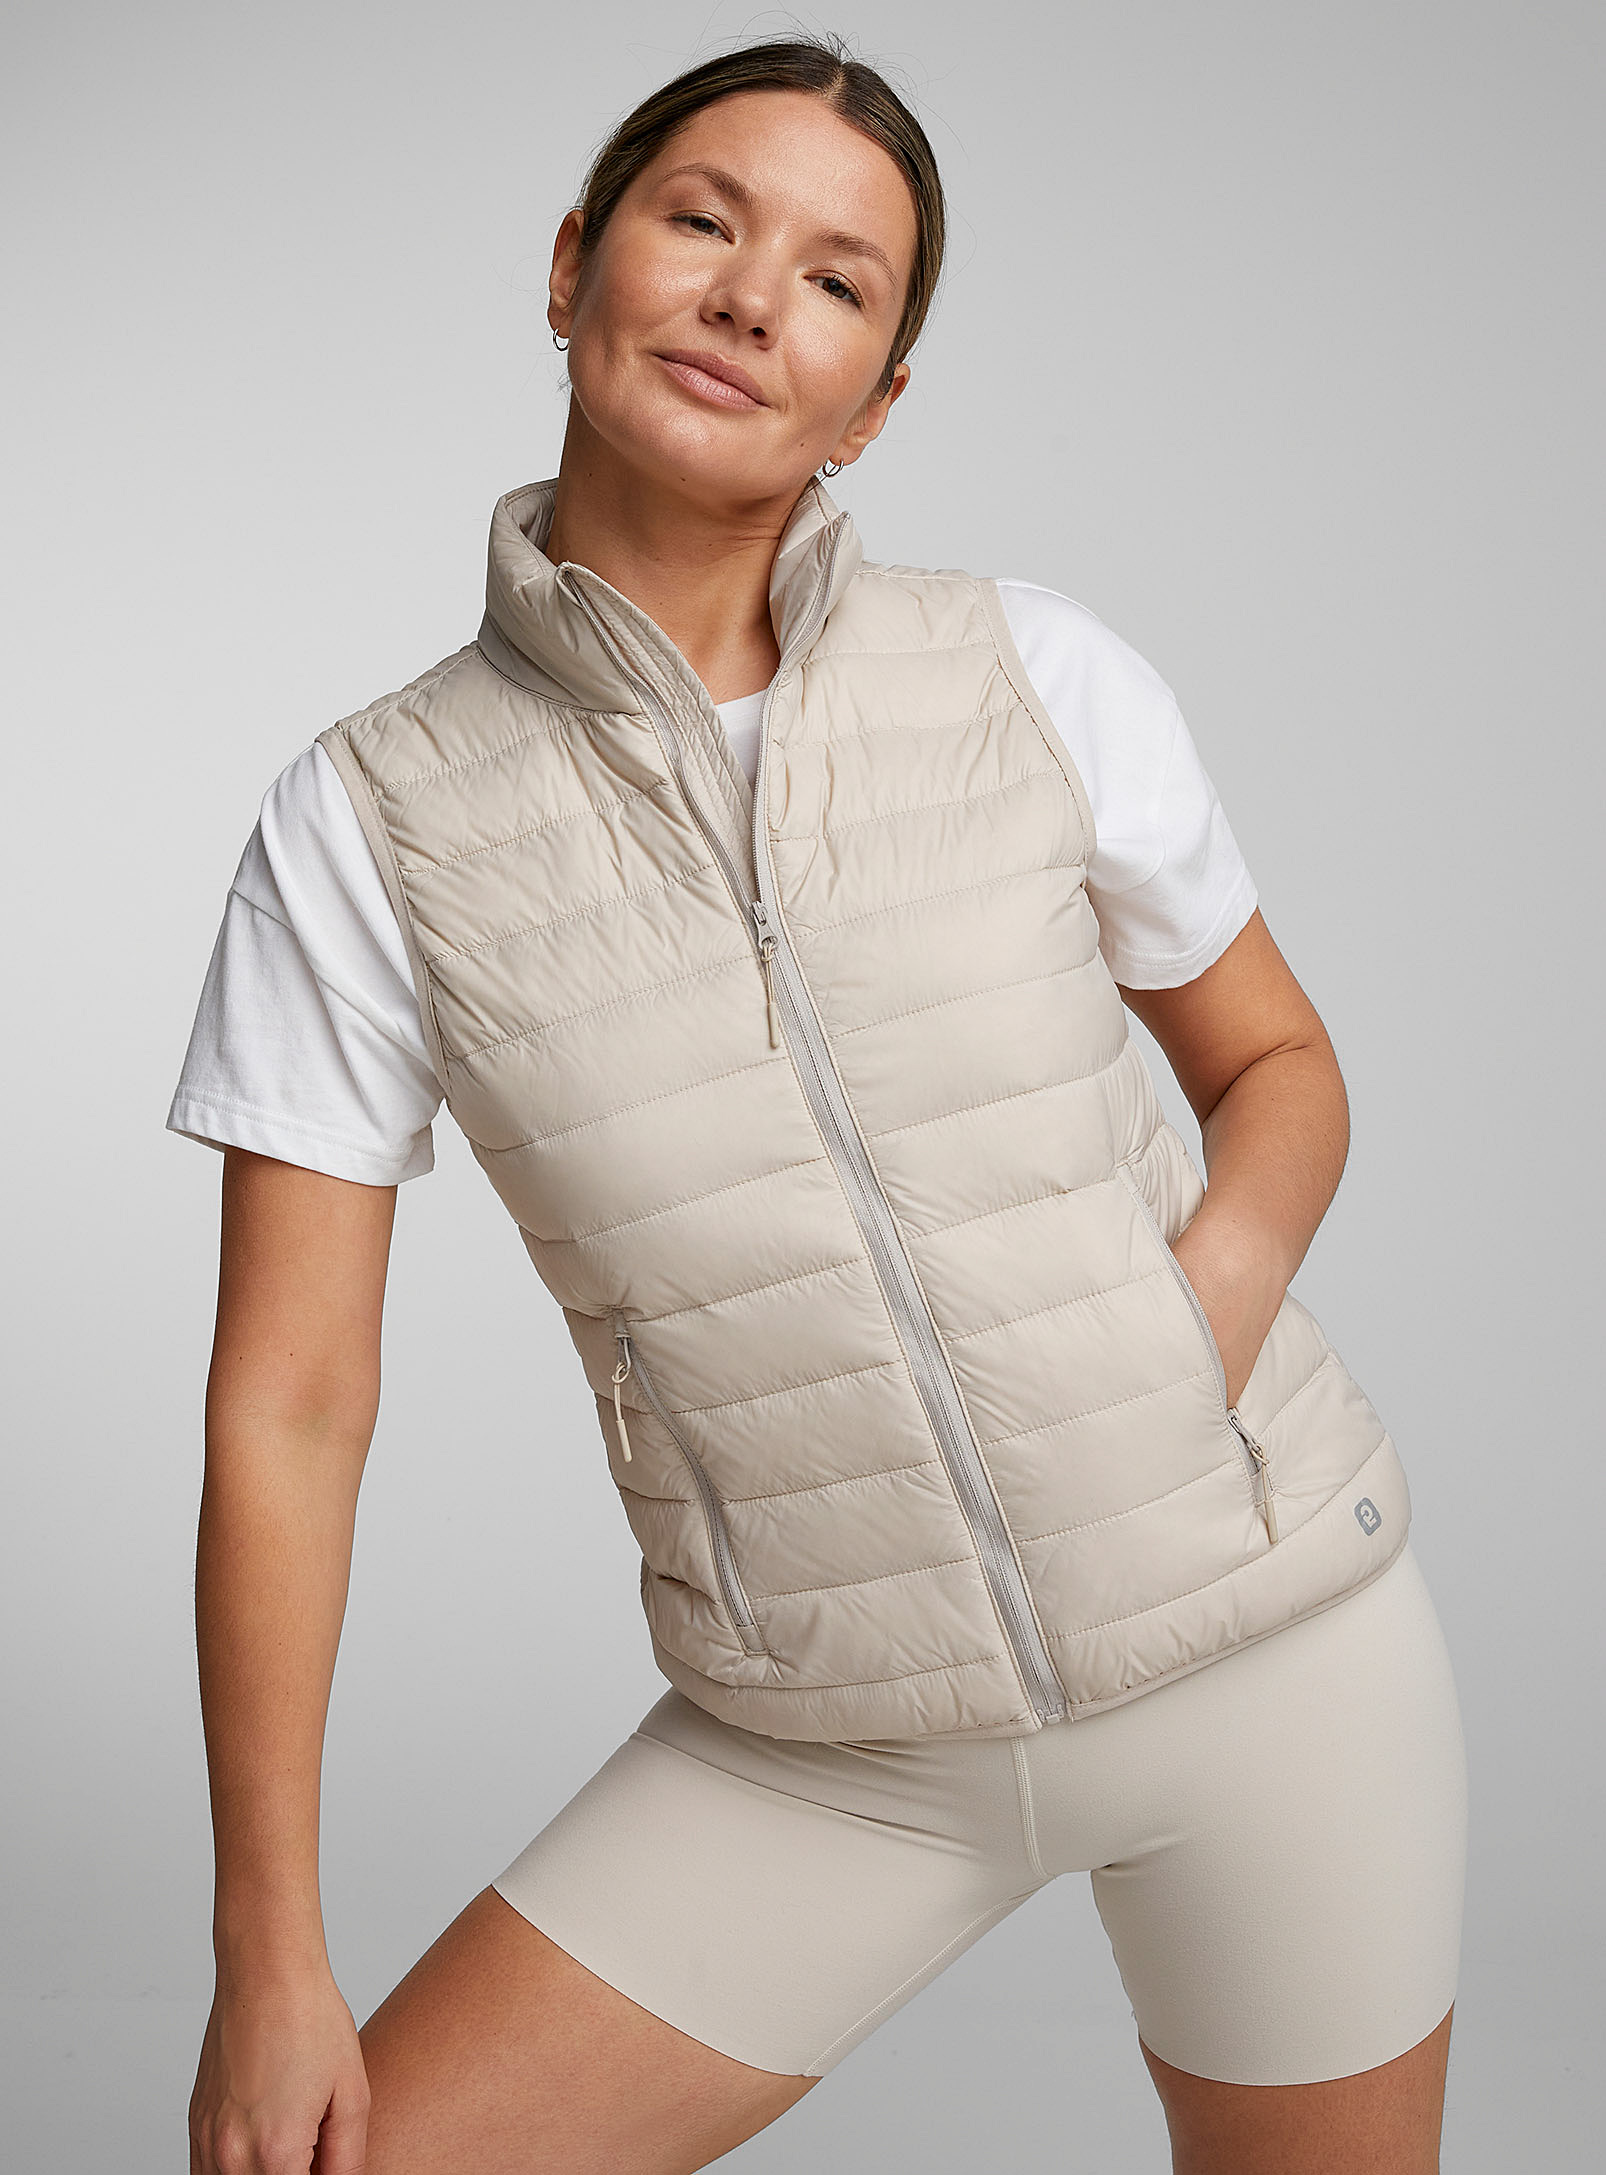 I.fiv5 Recycled Nylon Packable Sleeveless Puffer Vest In Ecru/linen